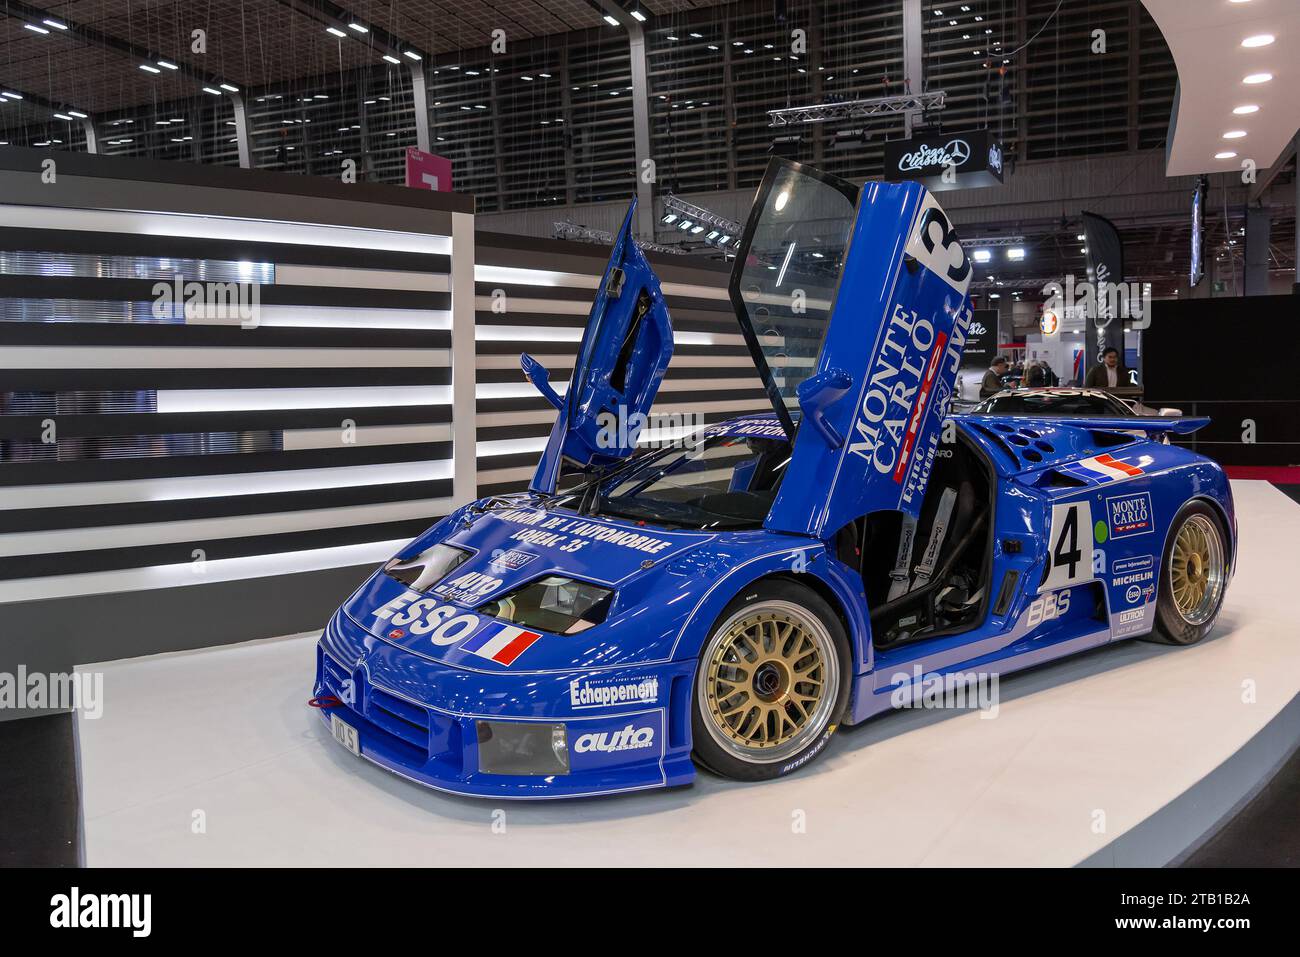 Paris, France - Rétromobile 2020. Focus on a blue 1994 Bugatti EB 110 S Le Mans. Chassis no. 39016. Stock Photo